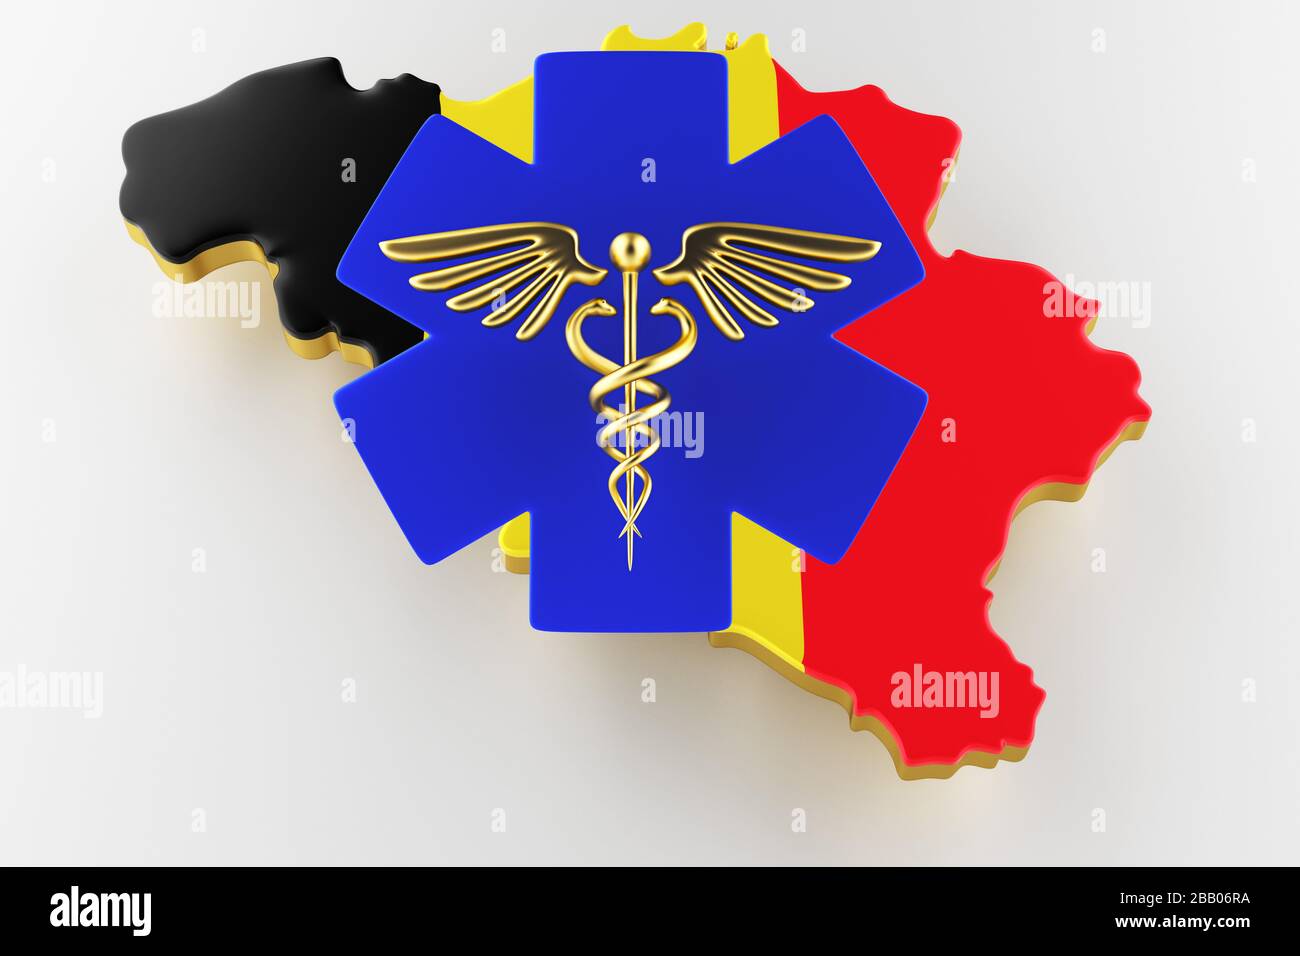 Caduceus Schild mit Schlangen auf einem medizinischen Stern. Karte von Belgien Landgrenze mit Flagge. Belgien-Karte auf weißem Hintergrund. 3D-Rendering Stockfoto